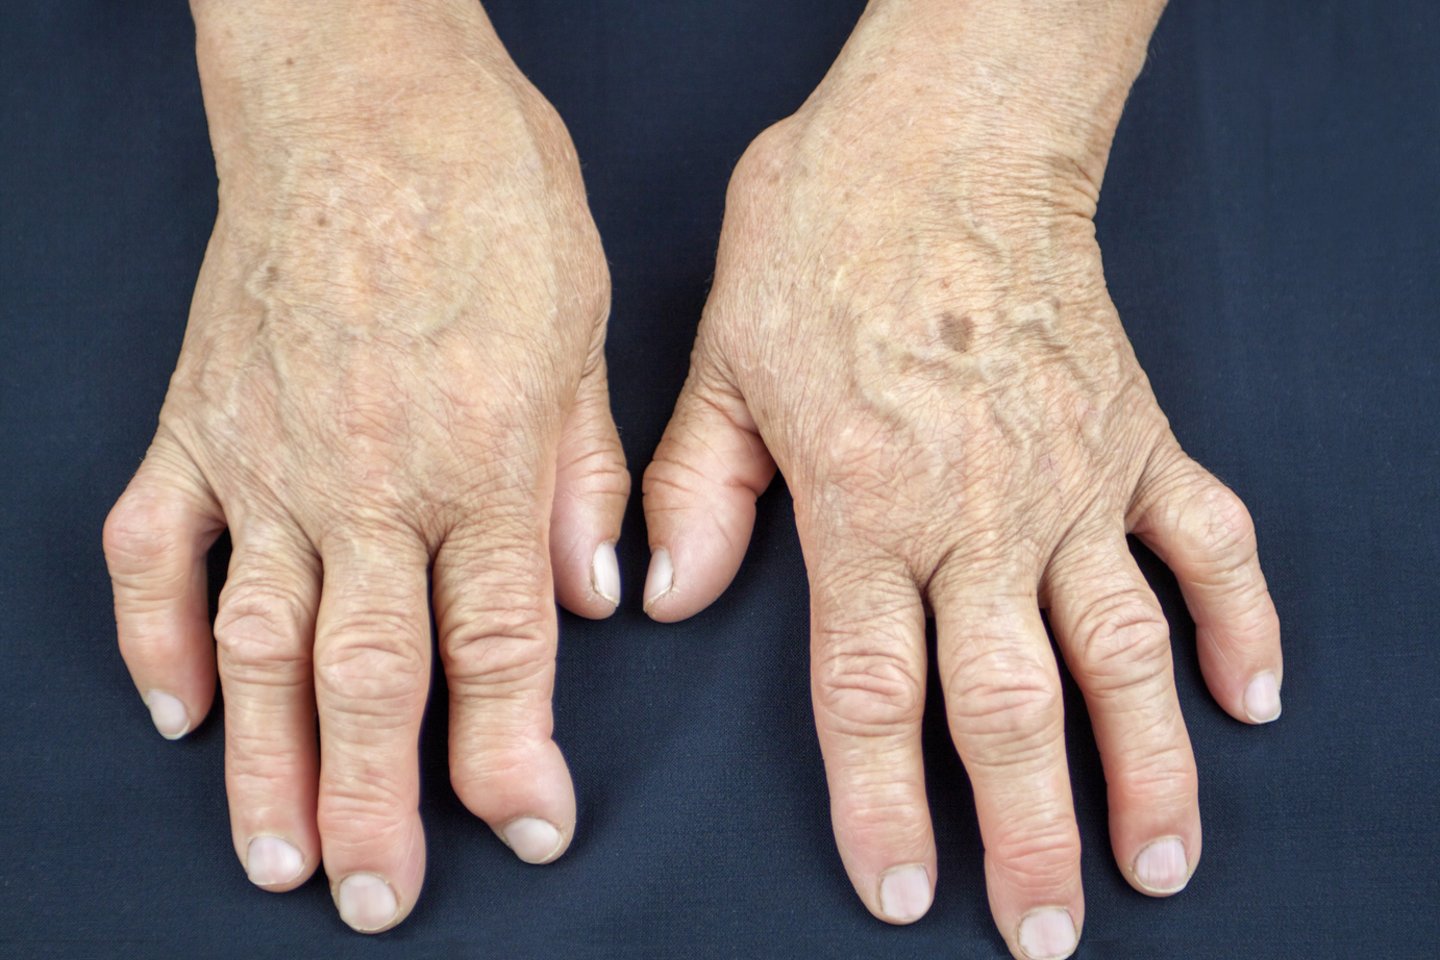 liaudies gynimo artritas pirštai skauda dilbio sąnariai